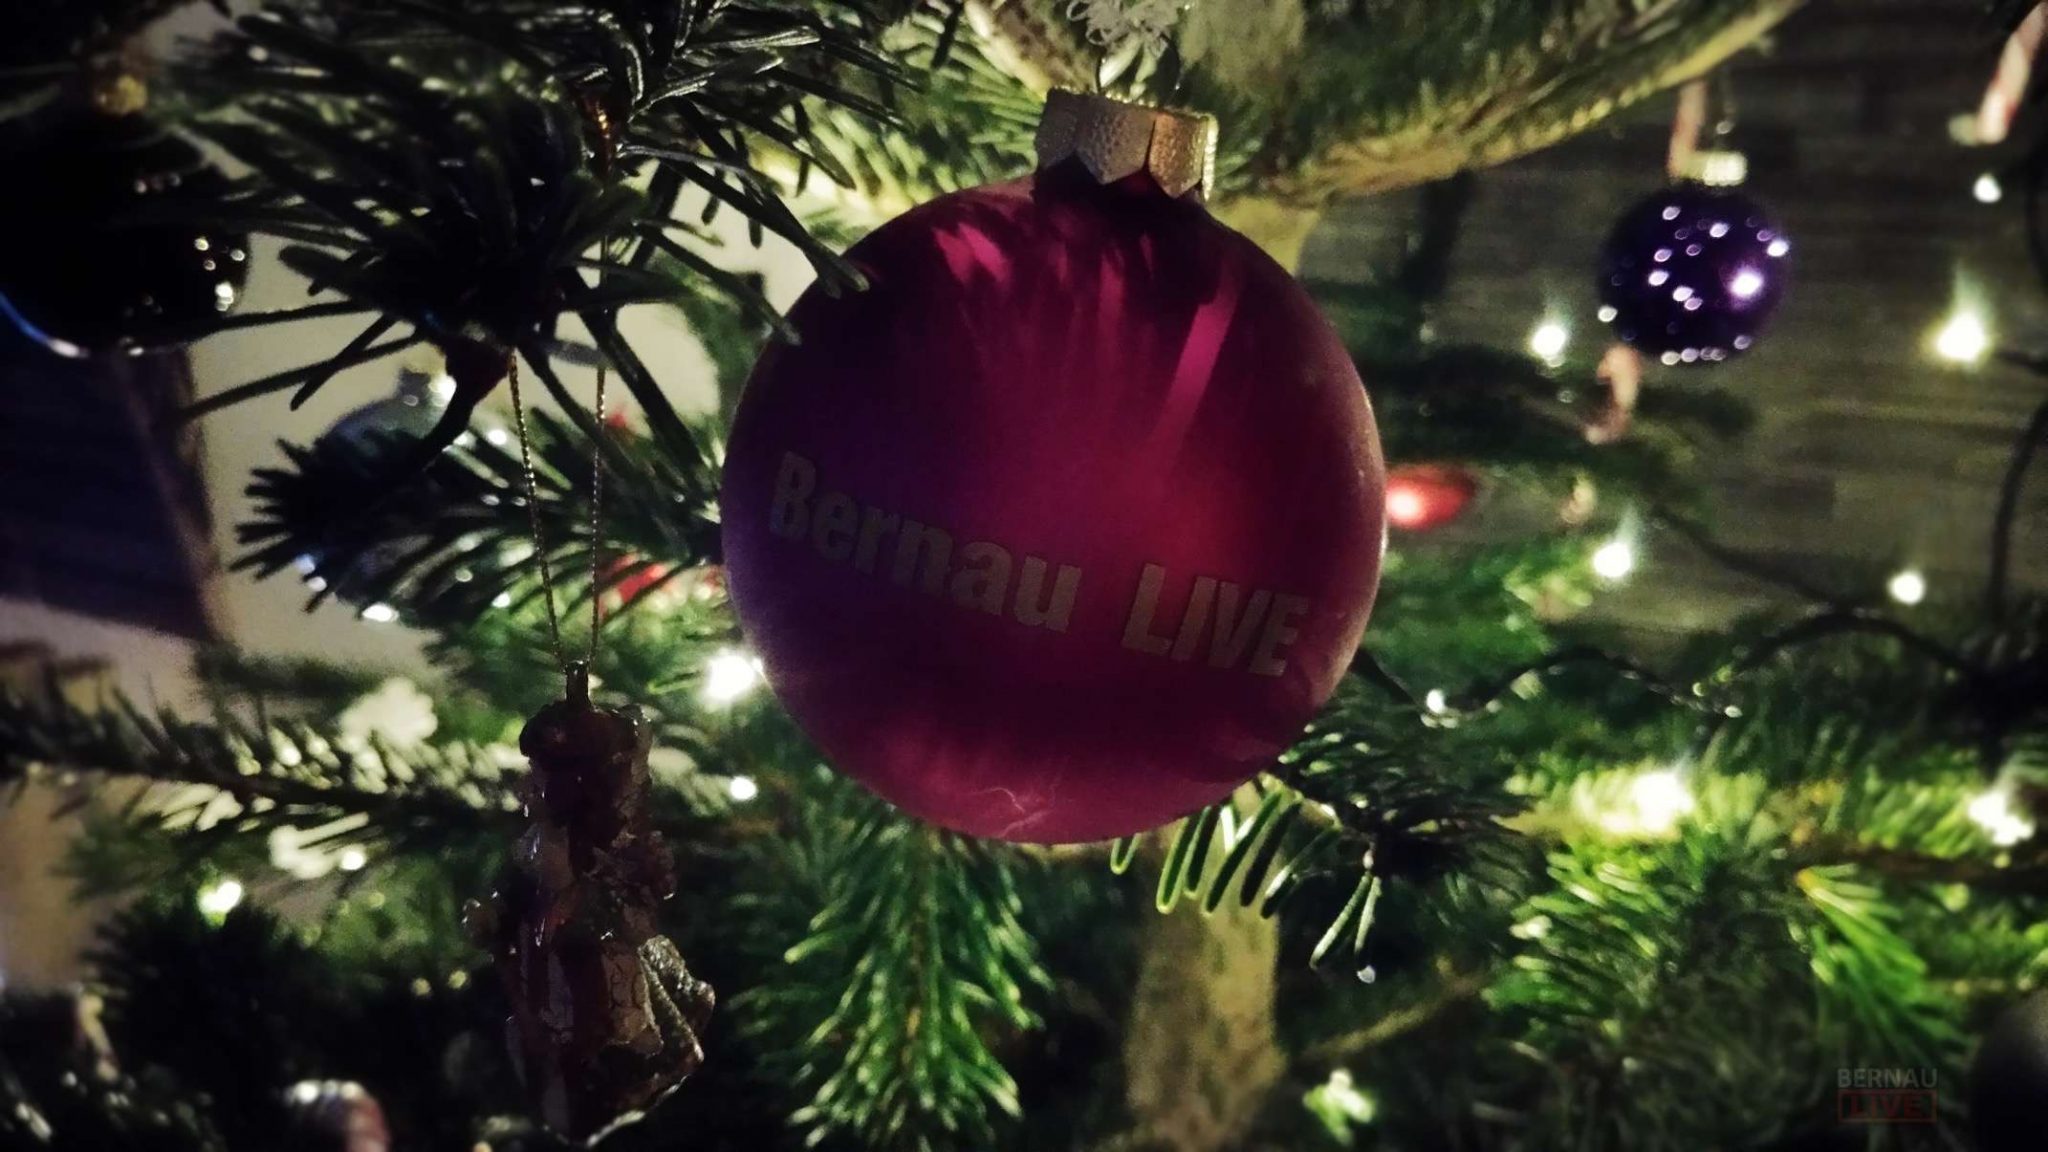 Bernau LIVE wünscht allen schöne und besinnliche Weihnachten